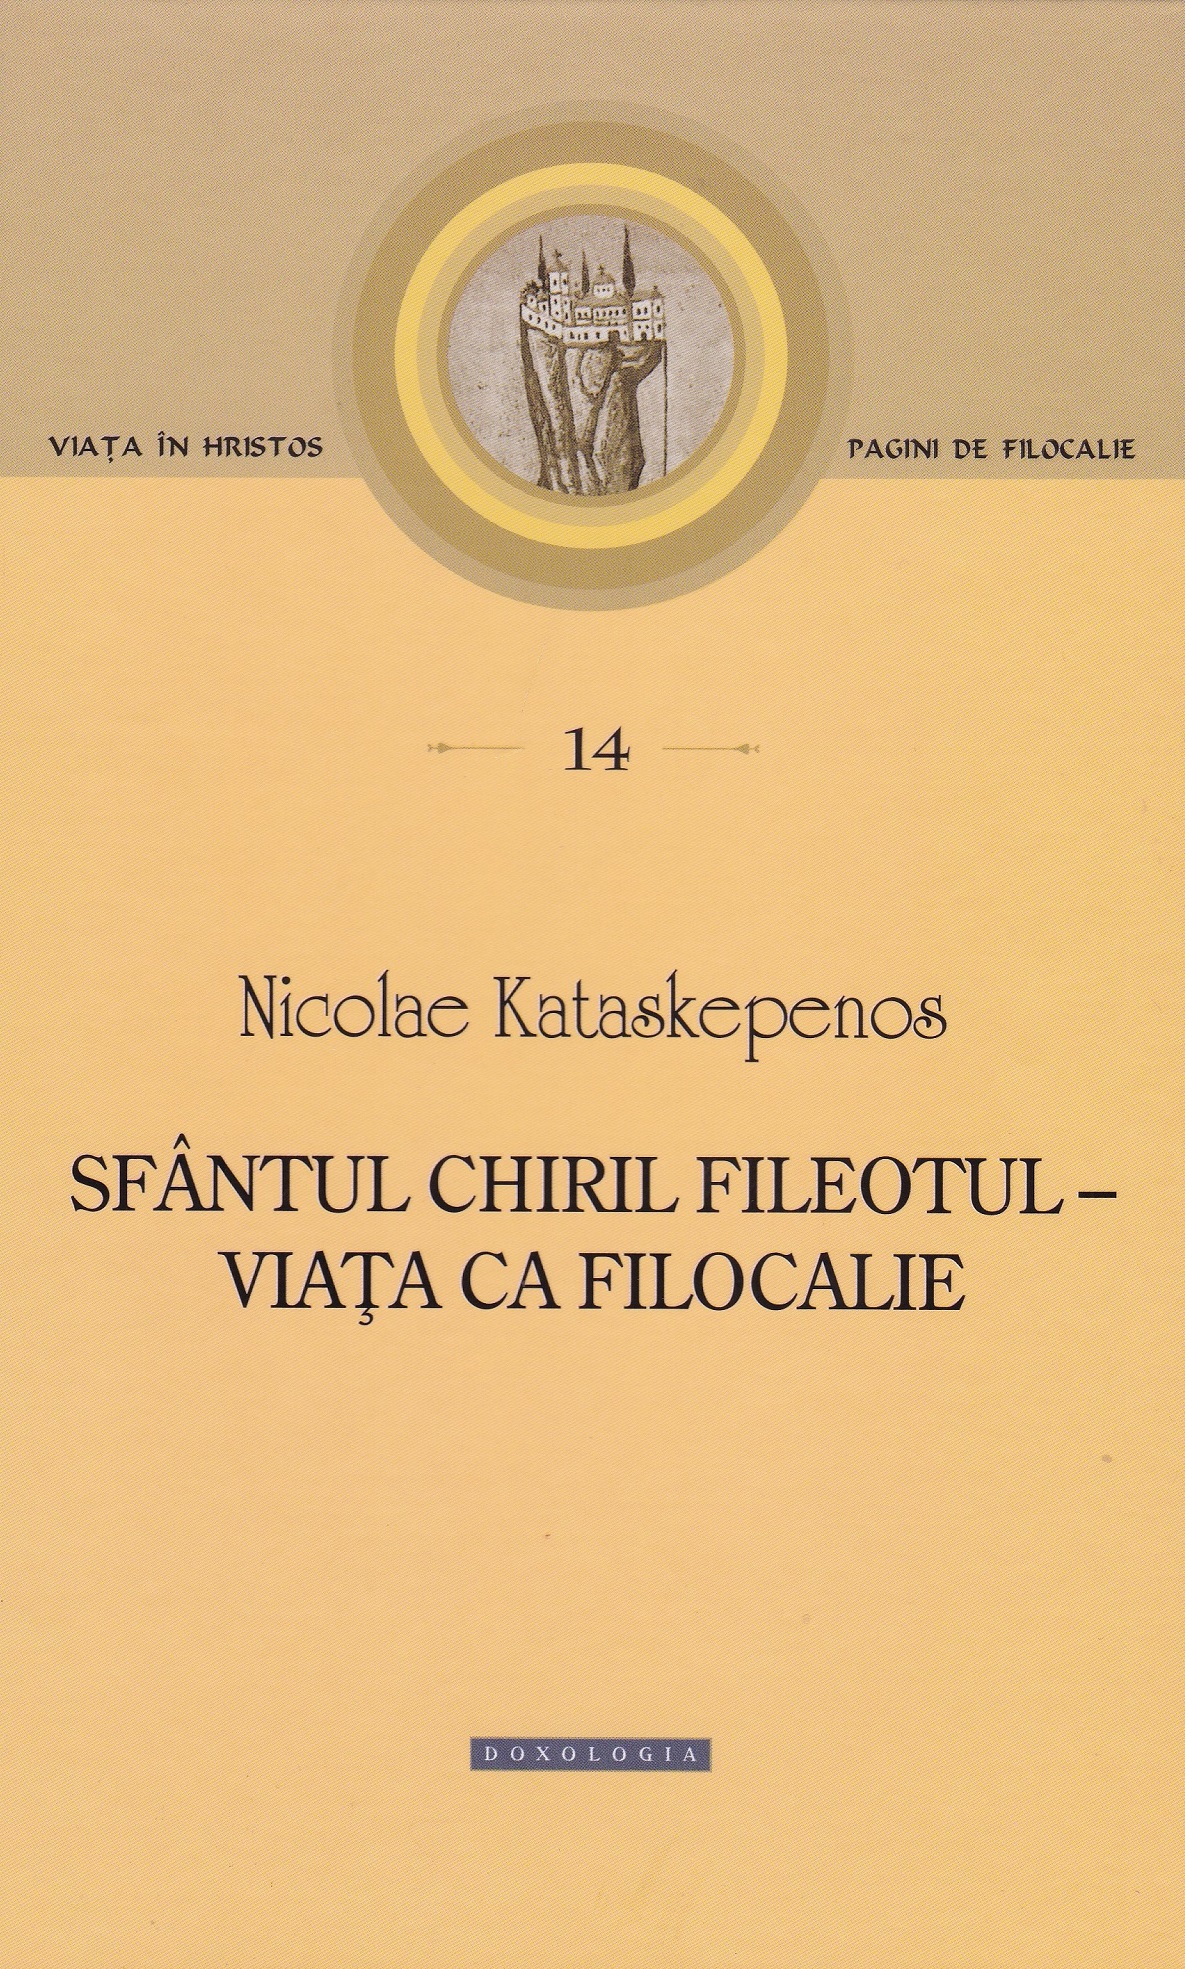 Sfantul Chiril Fileotul. Pagini de filocalie 14 - Nicolae Kataskepenos